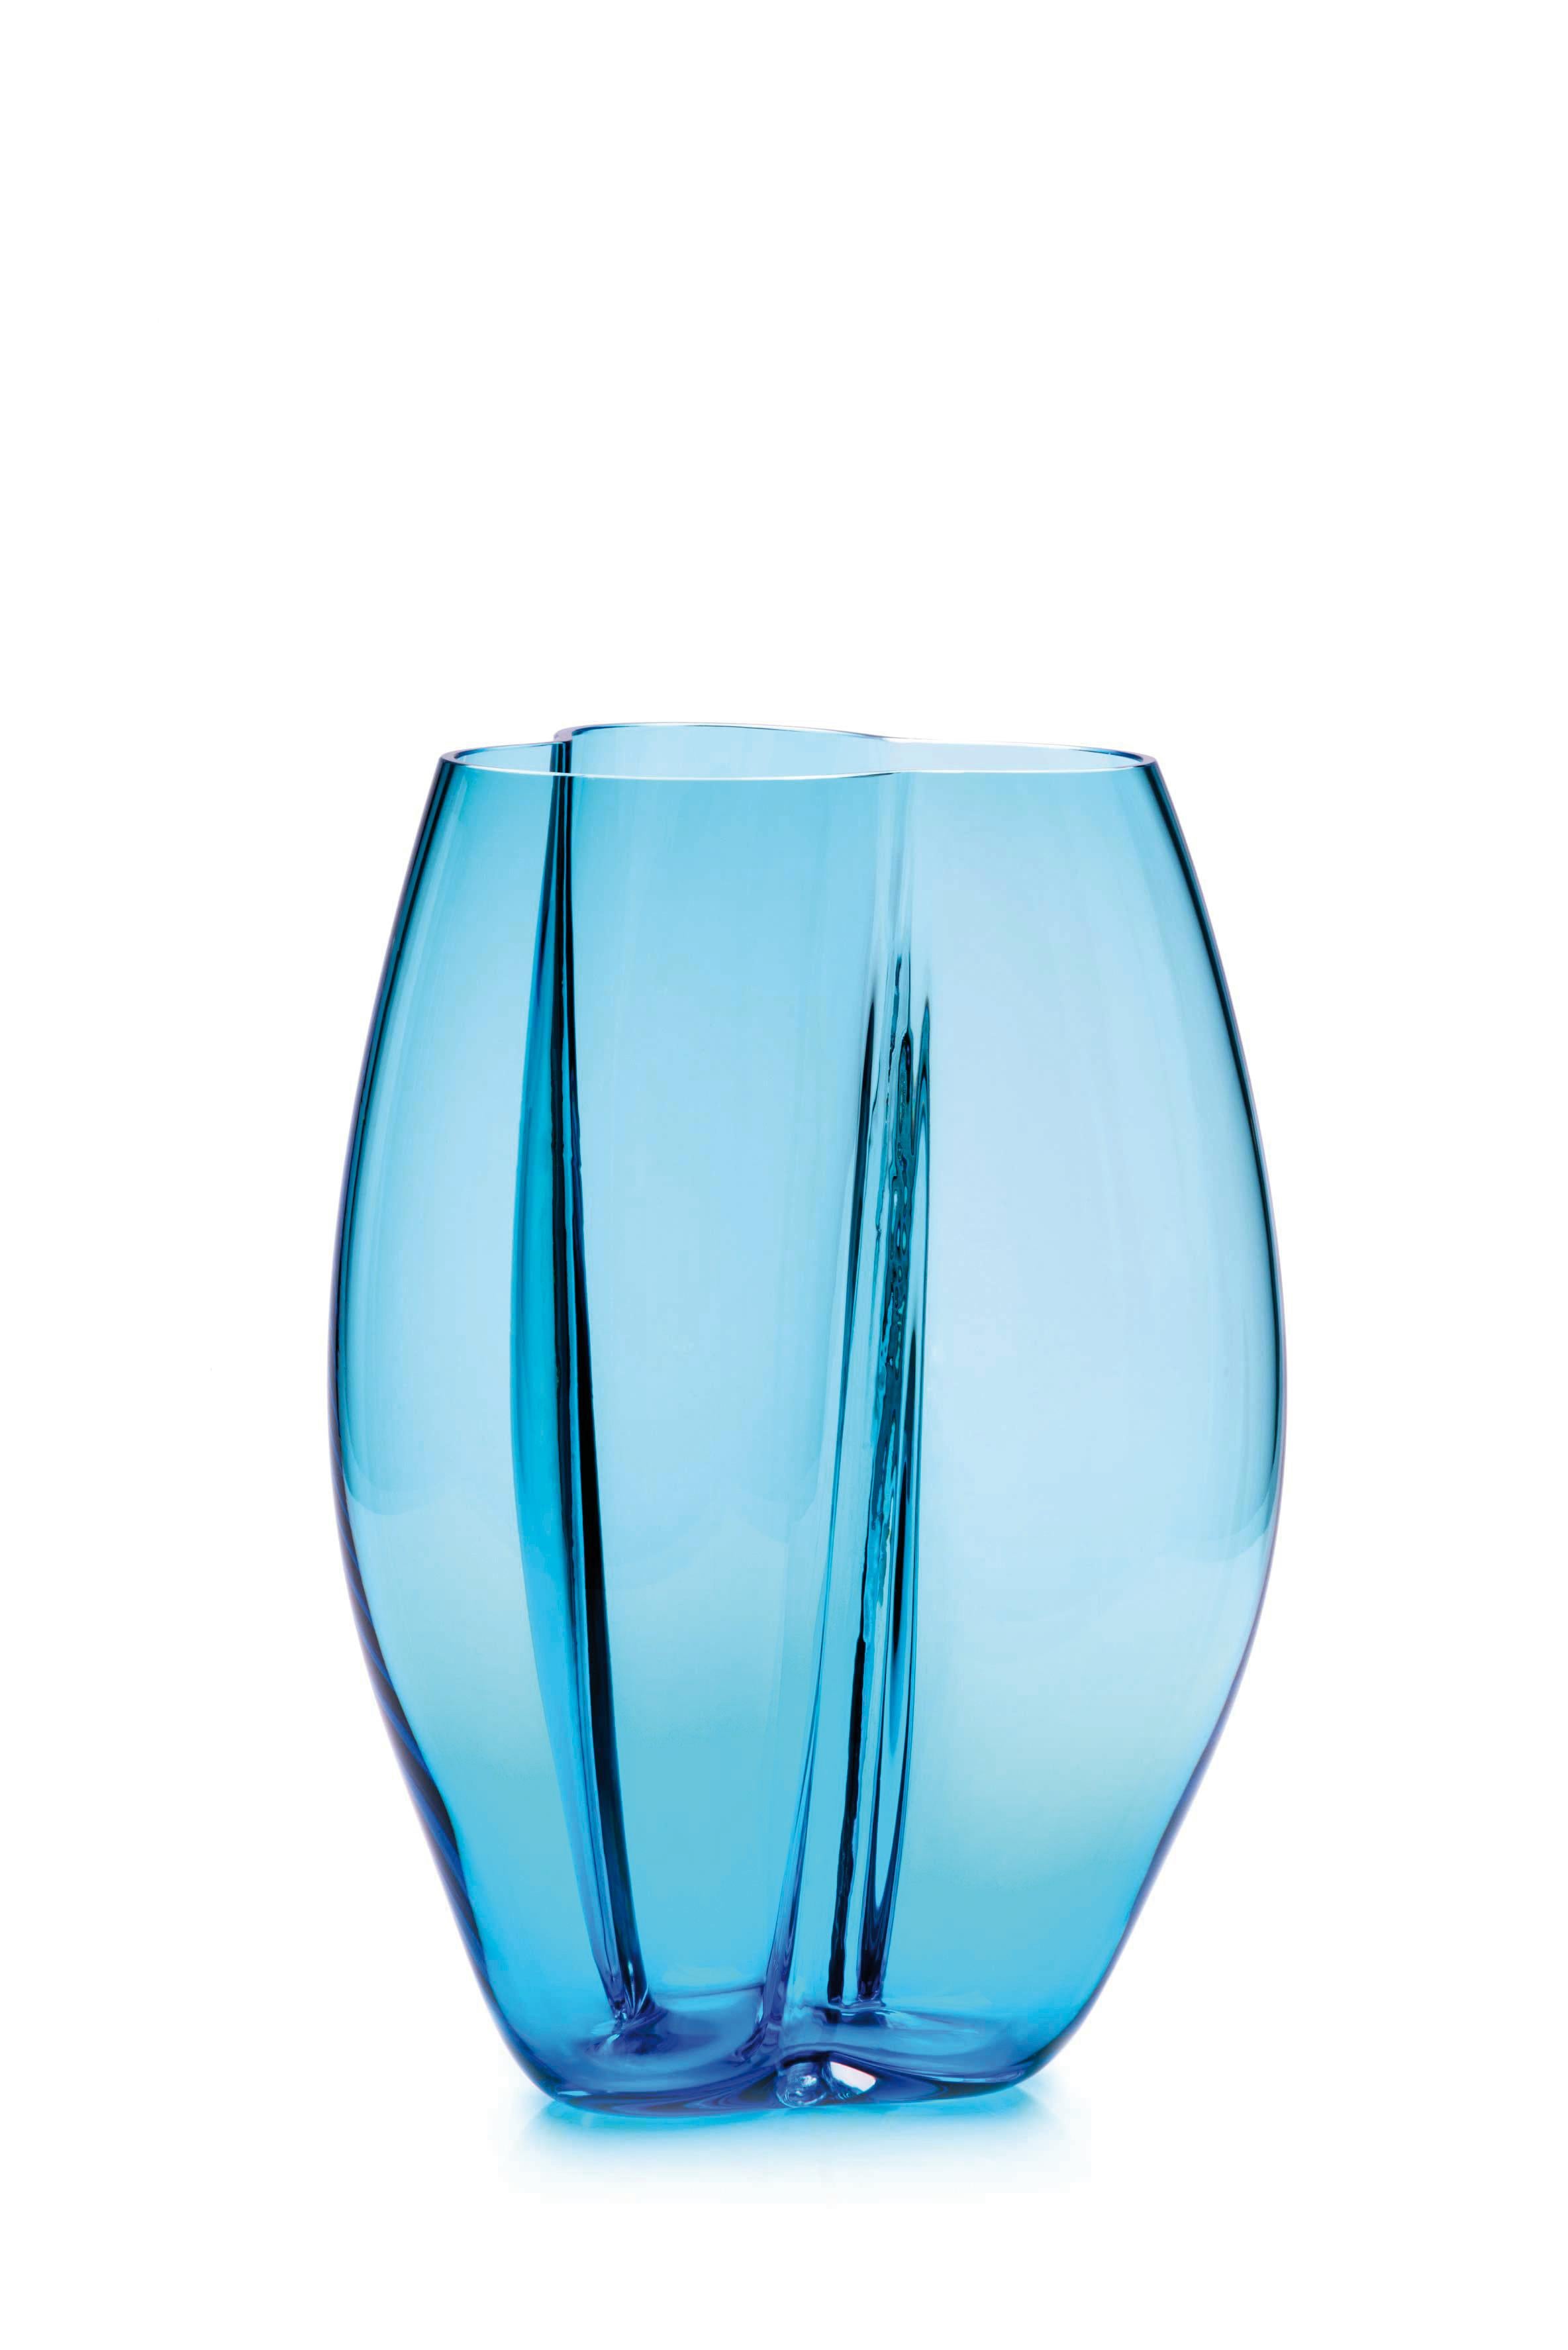 Petit vase bleu pétalo de Purho
Dimensions : D20 x H22 cm
Matériaux : Verre
D'autres couleurs et dimensions sont disponibles. 

Purho est un nouveau protagoniste du design made in Italy, un travail de synthèse, une recherche qui dure depuis des